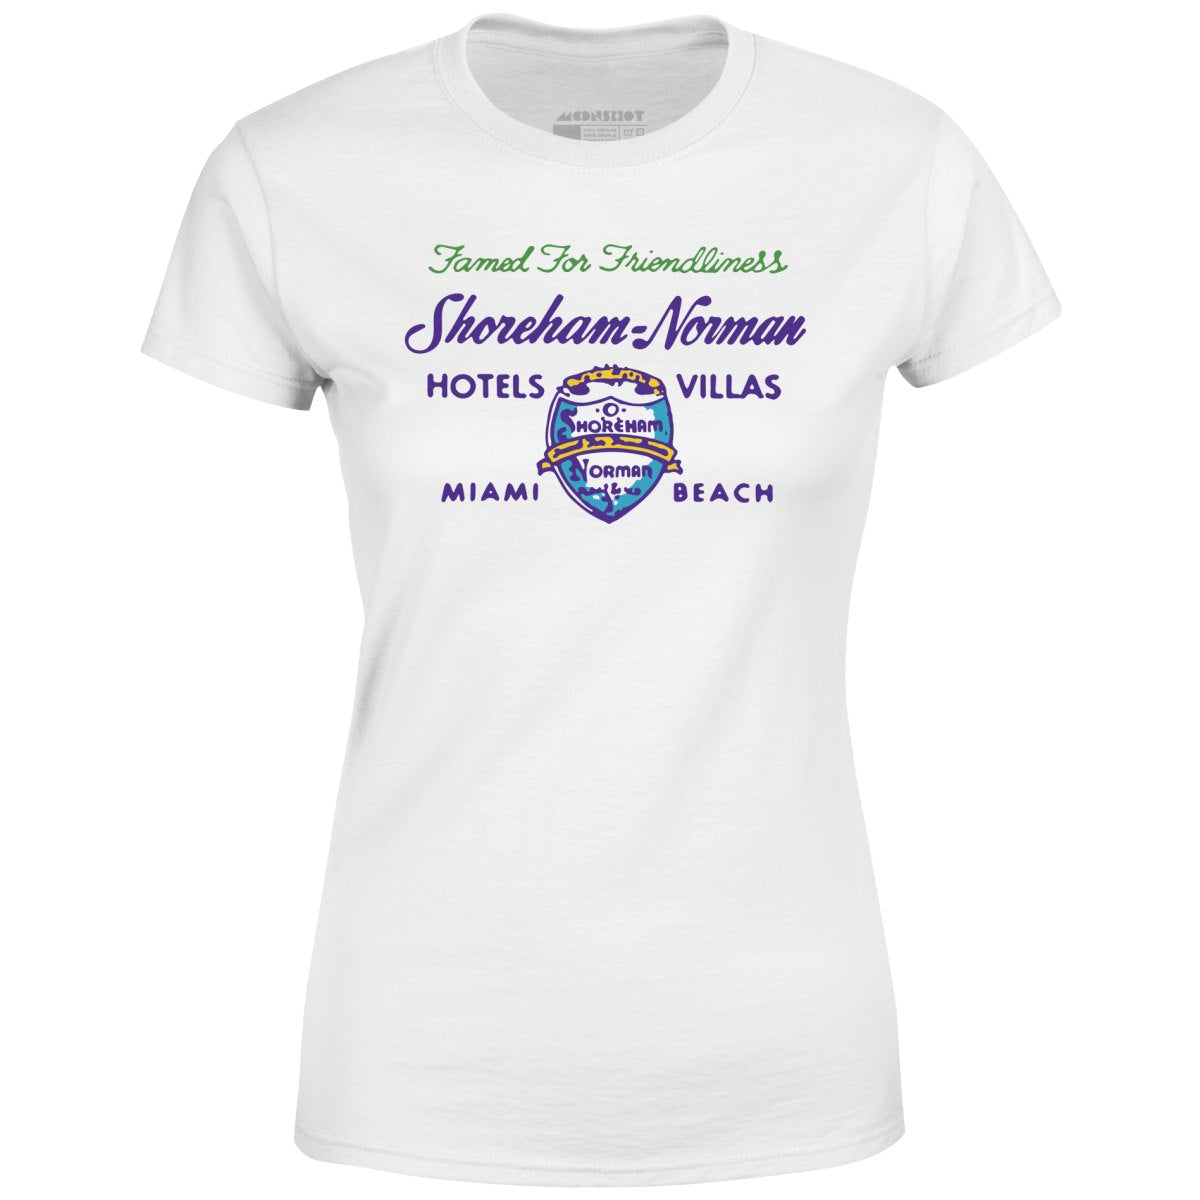 Shoreham Norman Hotels & Villas v2 - Miami, FL - Vintage Hotel - Women's T-Shirt